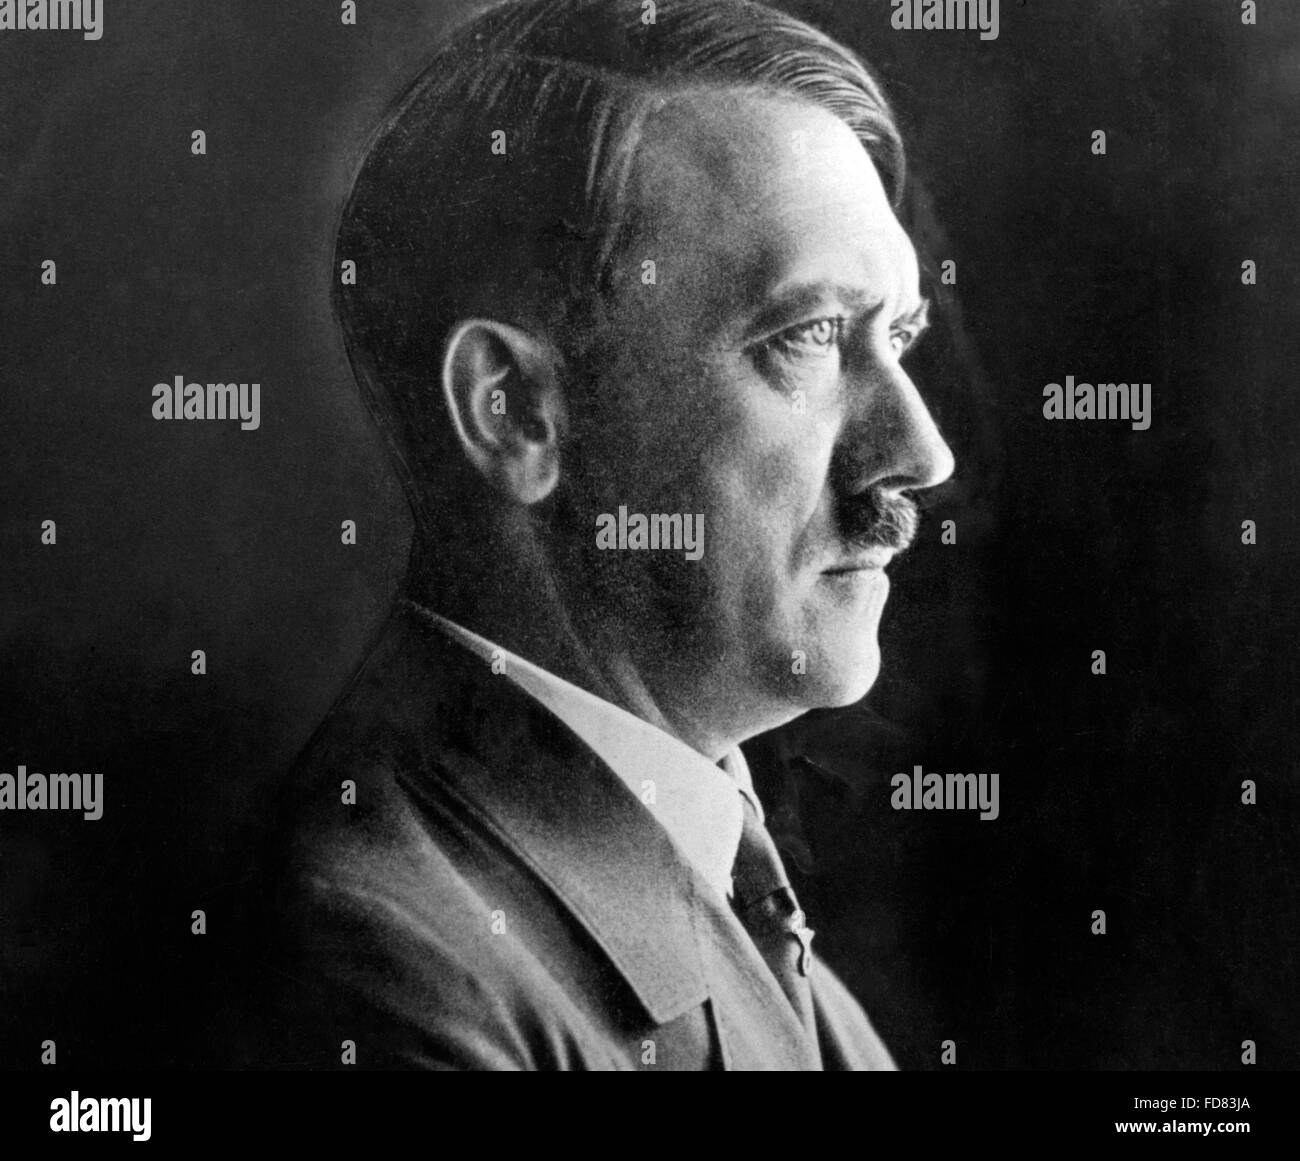 Portrait de profil d'Adolf Hitler, 1938 Banque D'Images